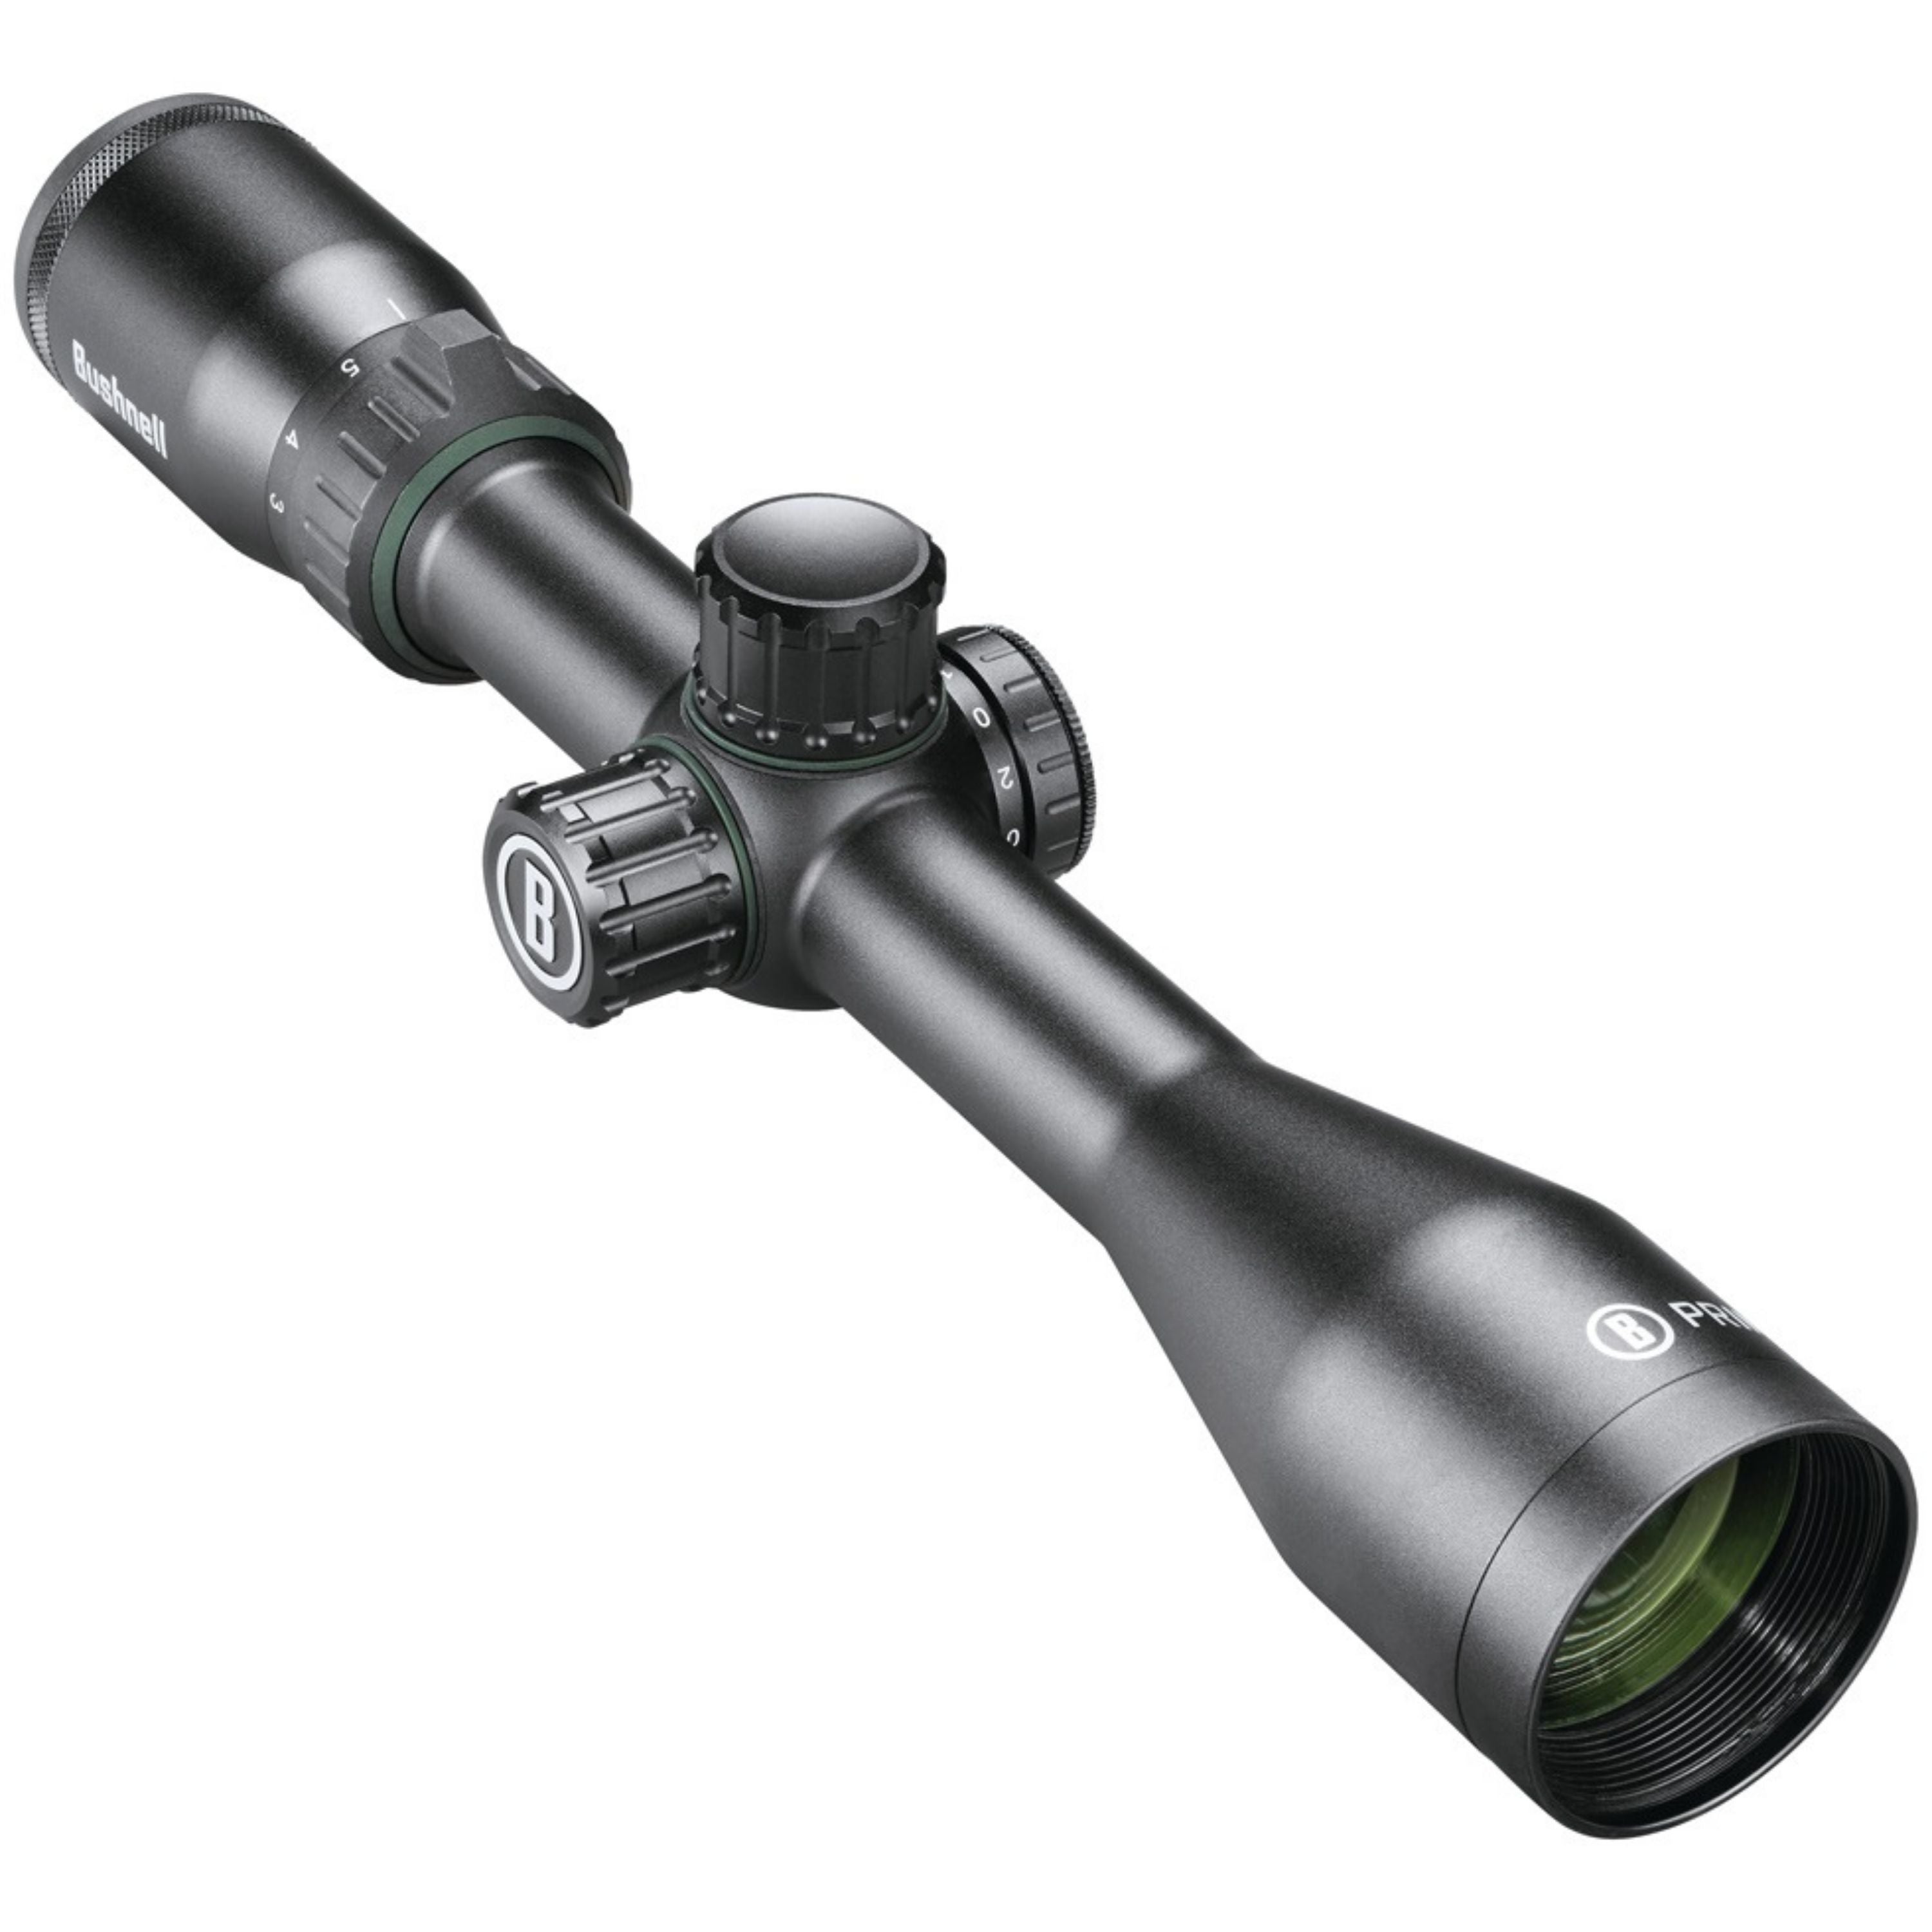 3-9X40 "Engage" rifle scope